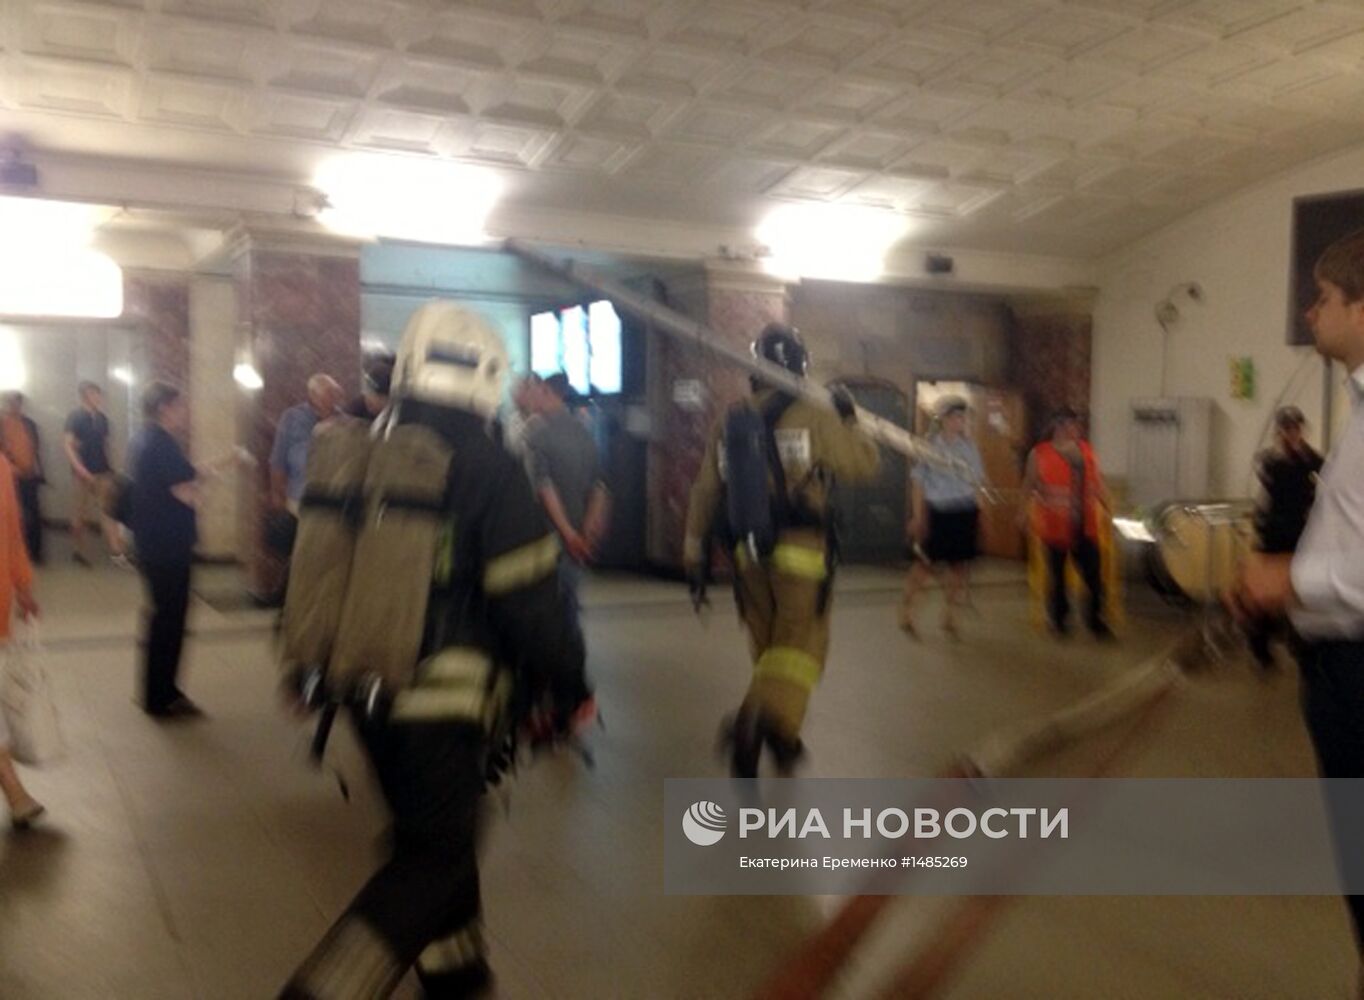 Станцию метро "Охотный ряд" в центре Москвы закрыли из-за пожара